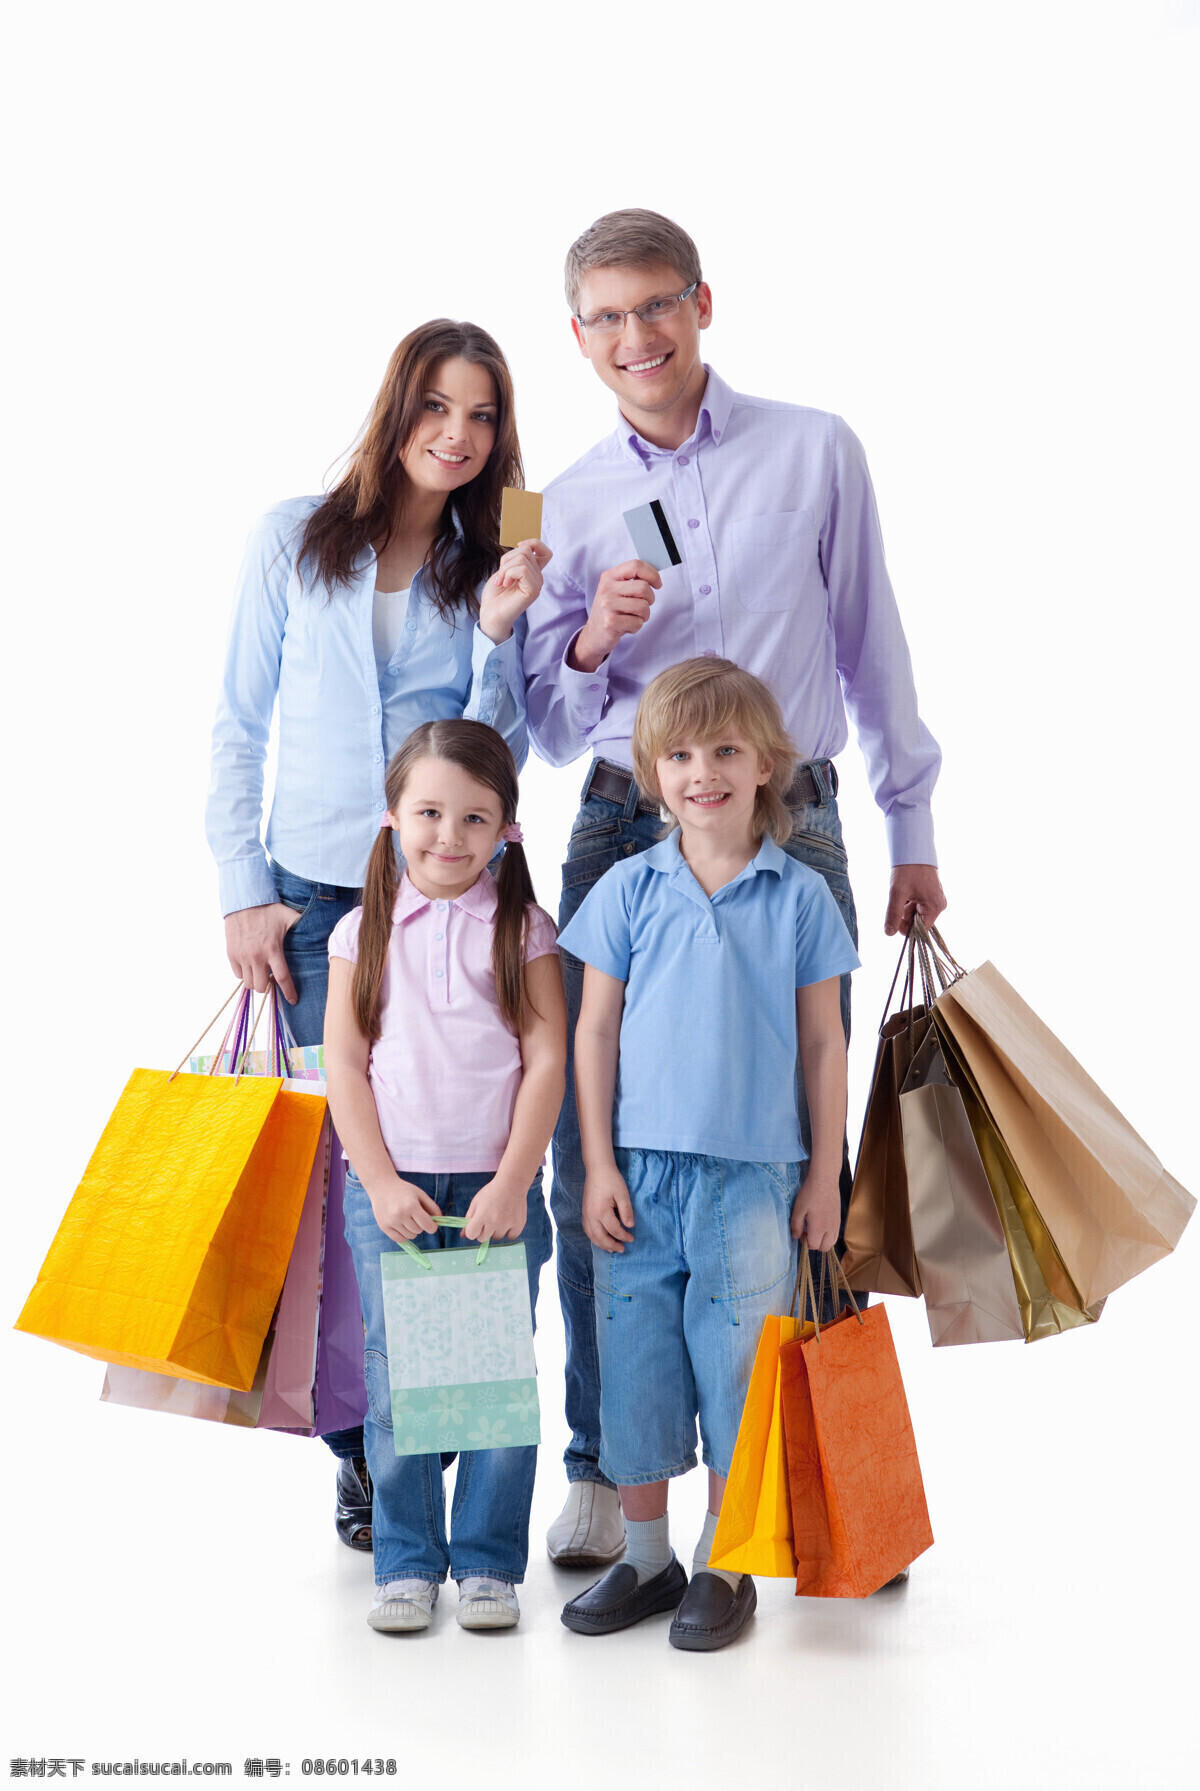 购物 一家人 家庭 购物袋 手提袋 一家四口 刷卡 刷卡消费 开心 高兴 幸福 生活人物 人物图片